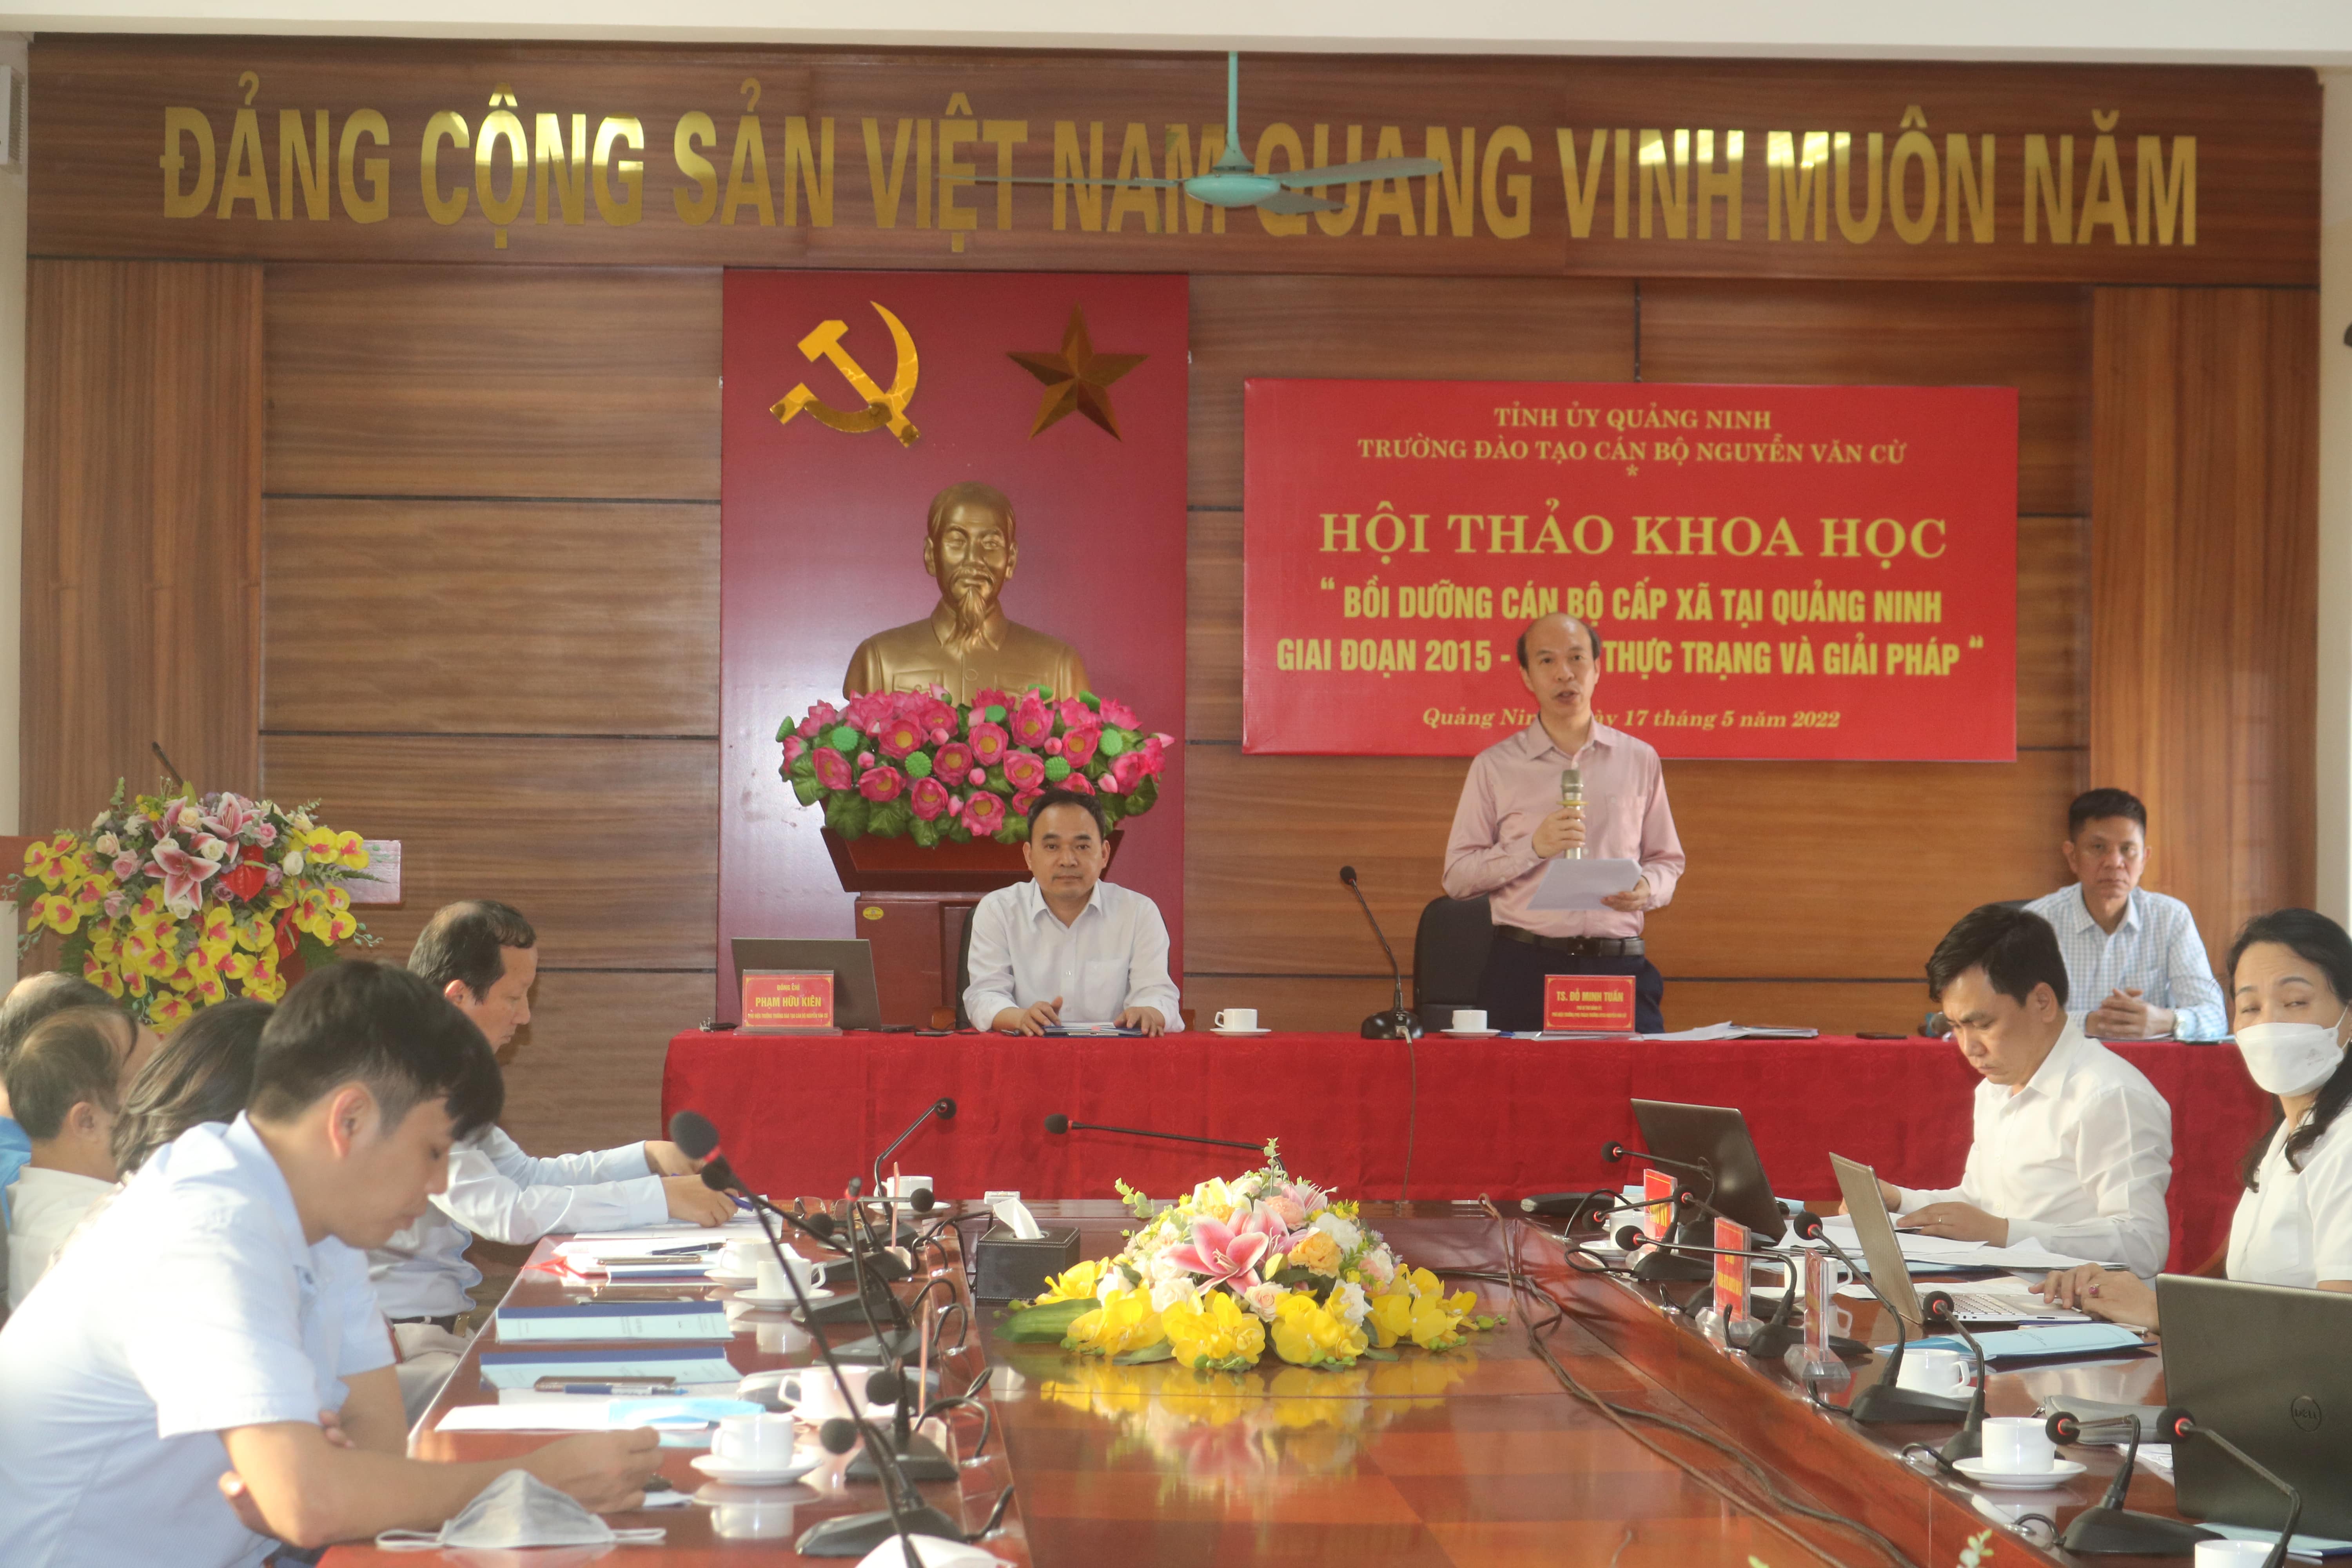 HỘI THẢO KHOA HỌC “Bồi dưỡng cán bộ cấp xã tại tỉnh Quảng Ninh, giai đoạn (2015 -2020) – Thực trạng và giải pháp”